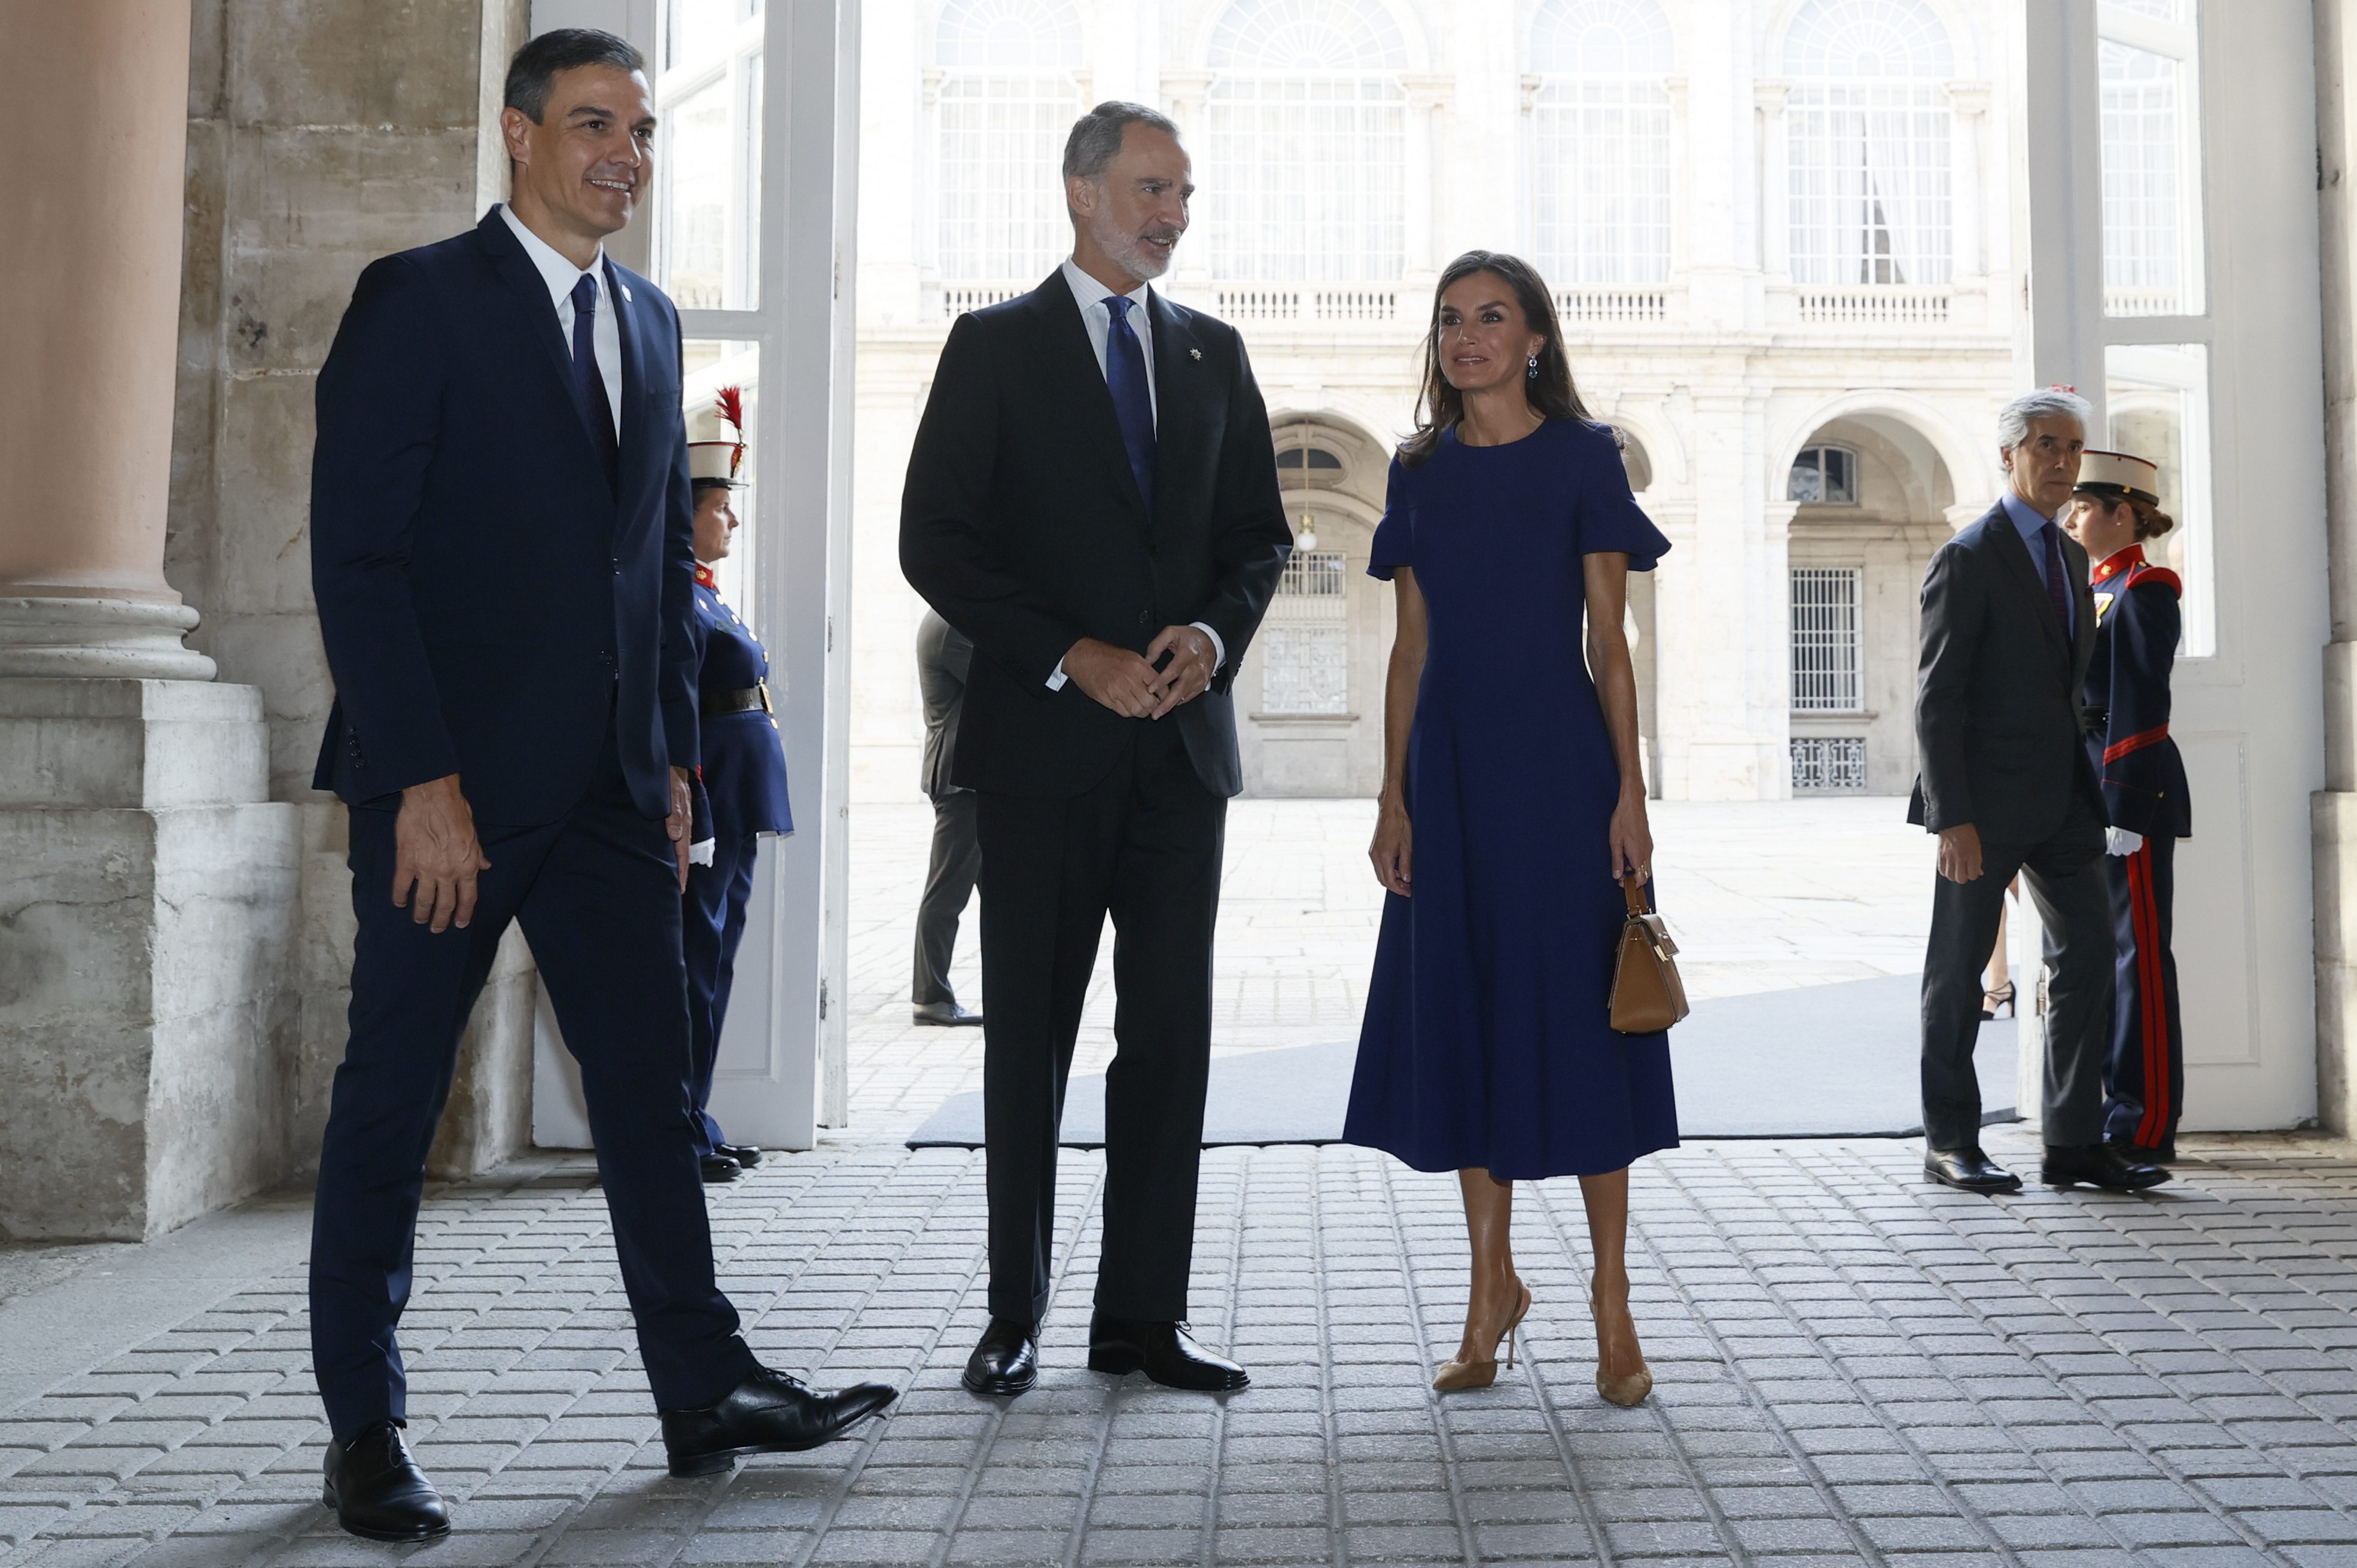 Kralja Felipeja VI. in kralja Letizio sprejme premier Pedro Sánchez ob prihodu na tretji državni poklon žrtvam covida-19 v kraljevi palači v Madridu.